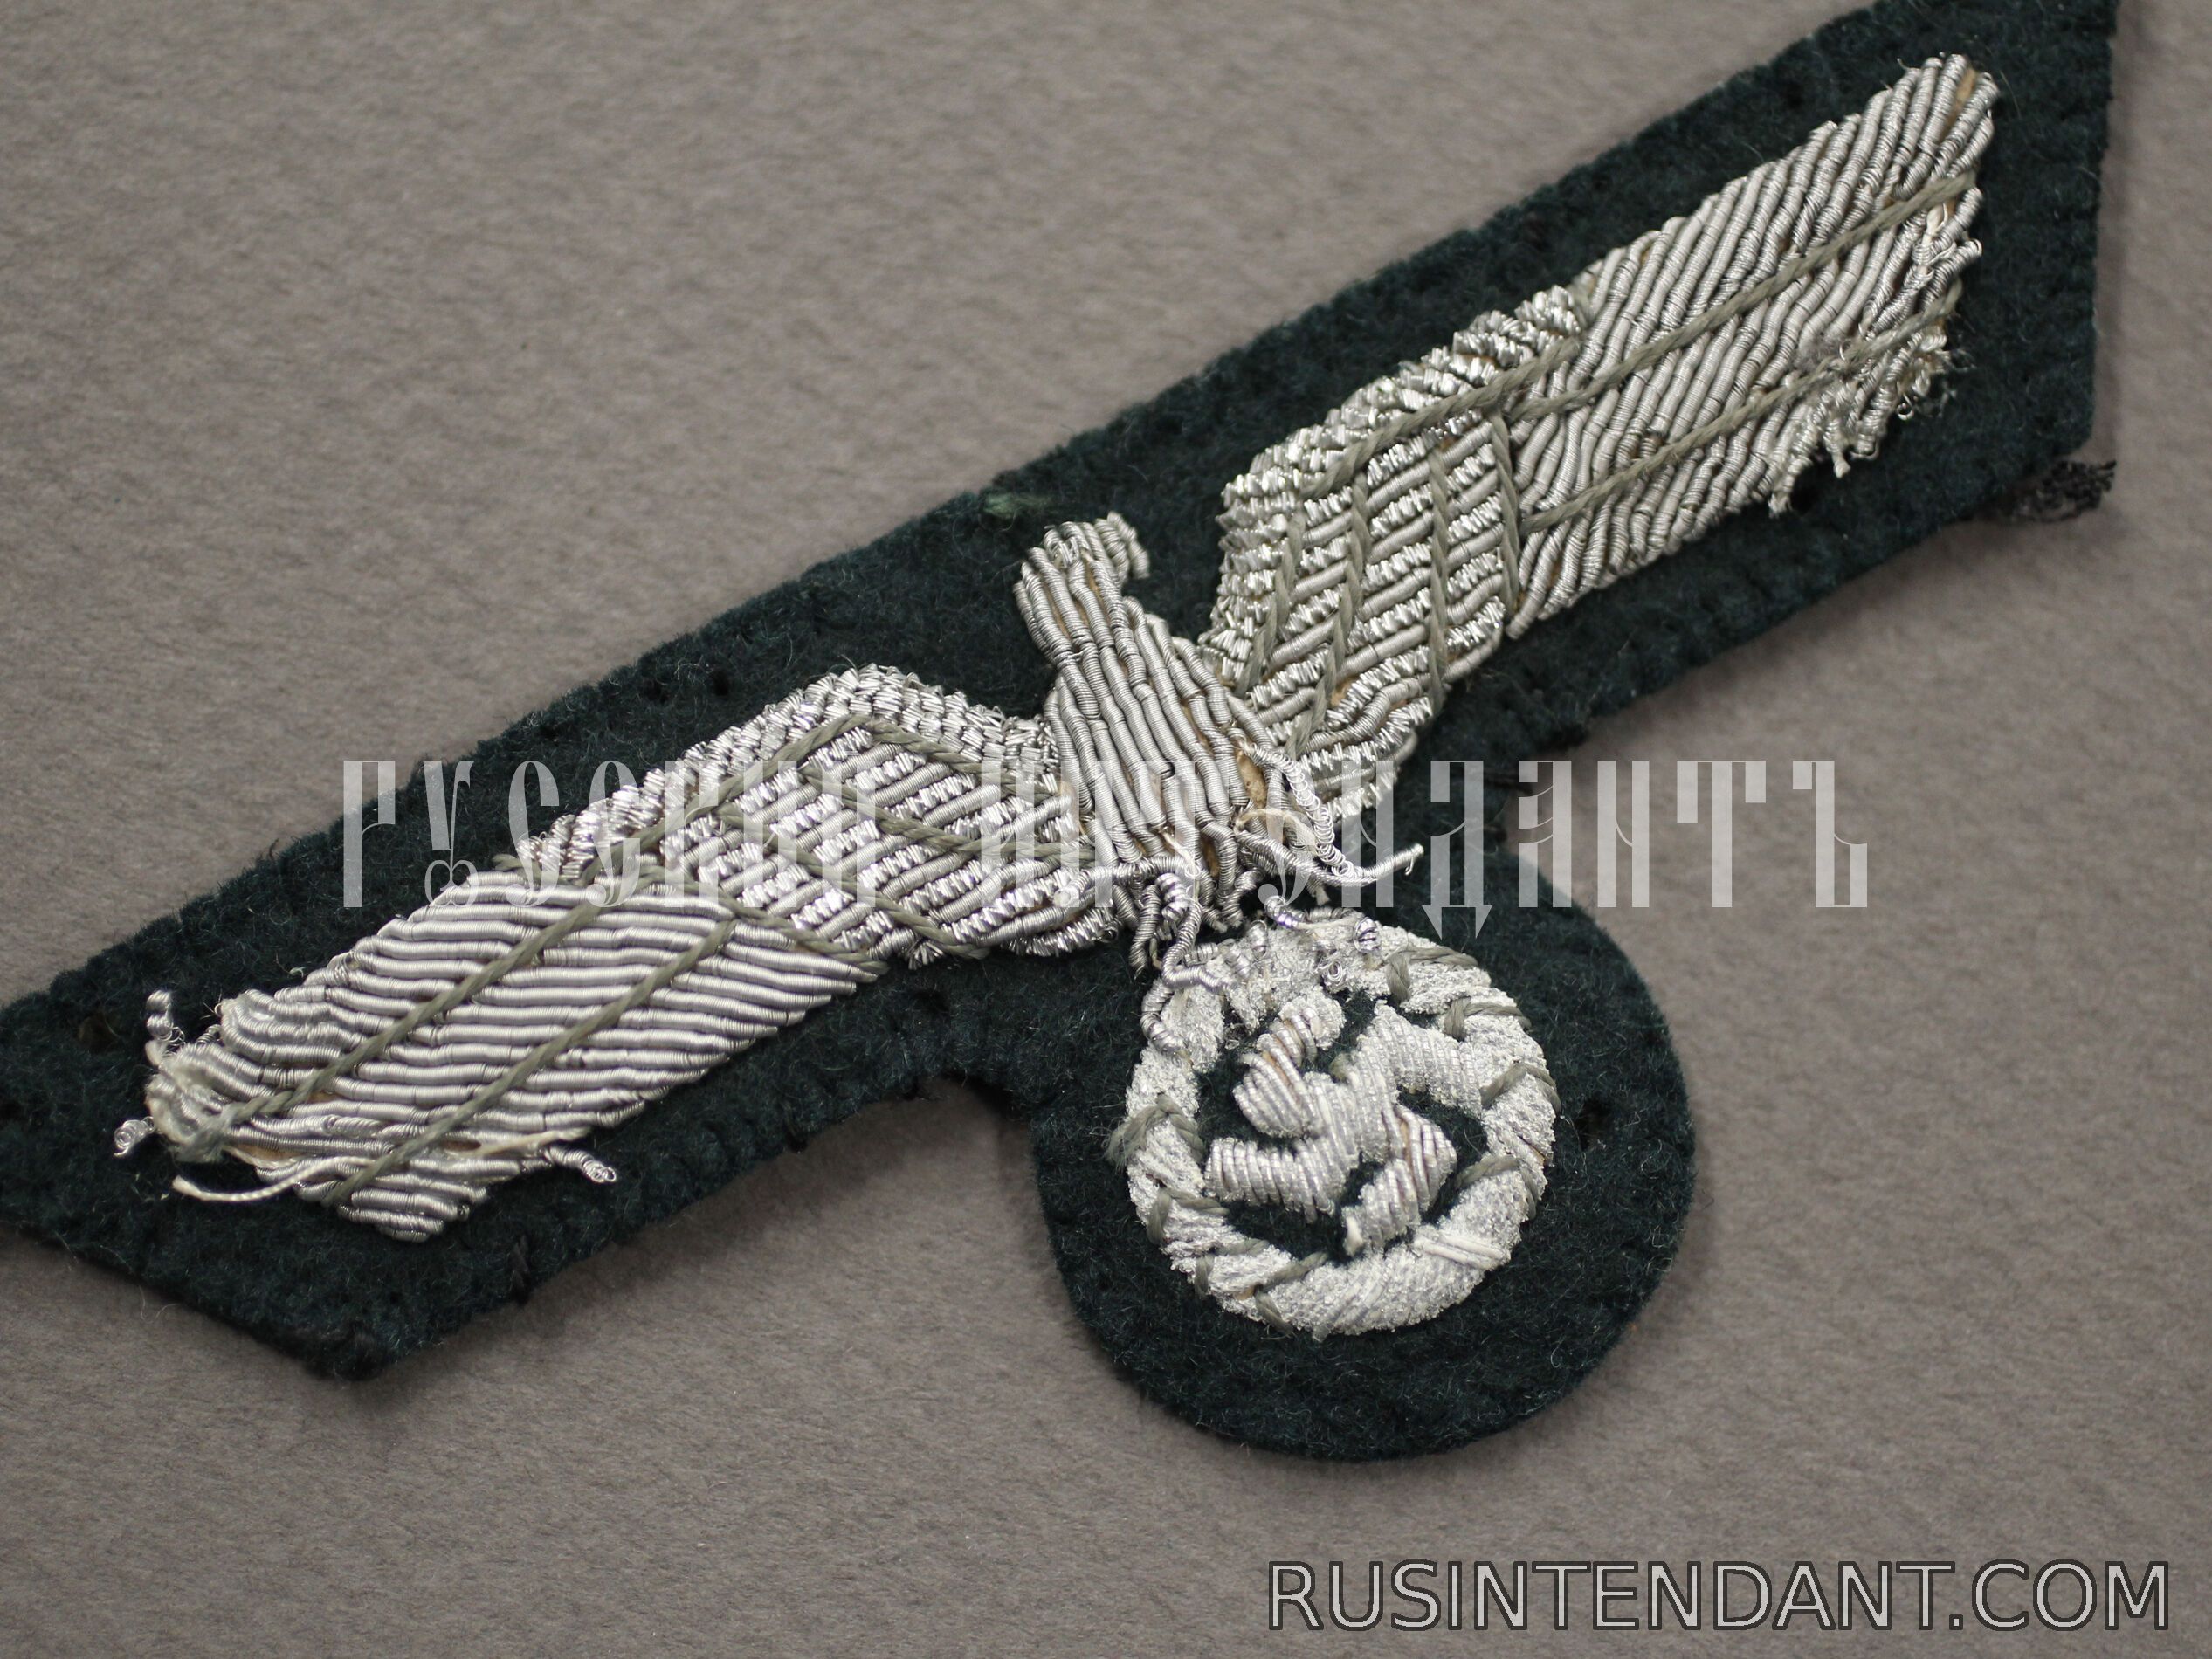 Фото 2: Нагрудная эмблема офицера Вермахта 